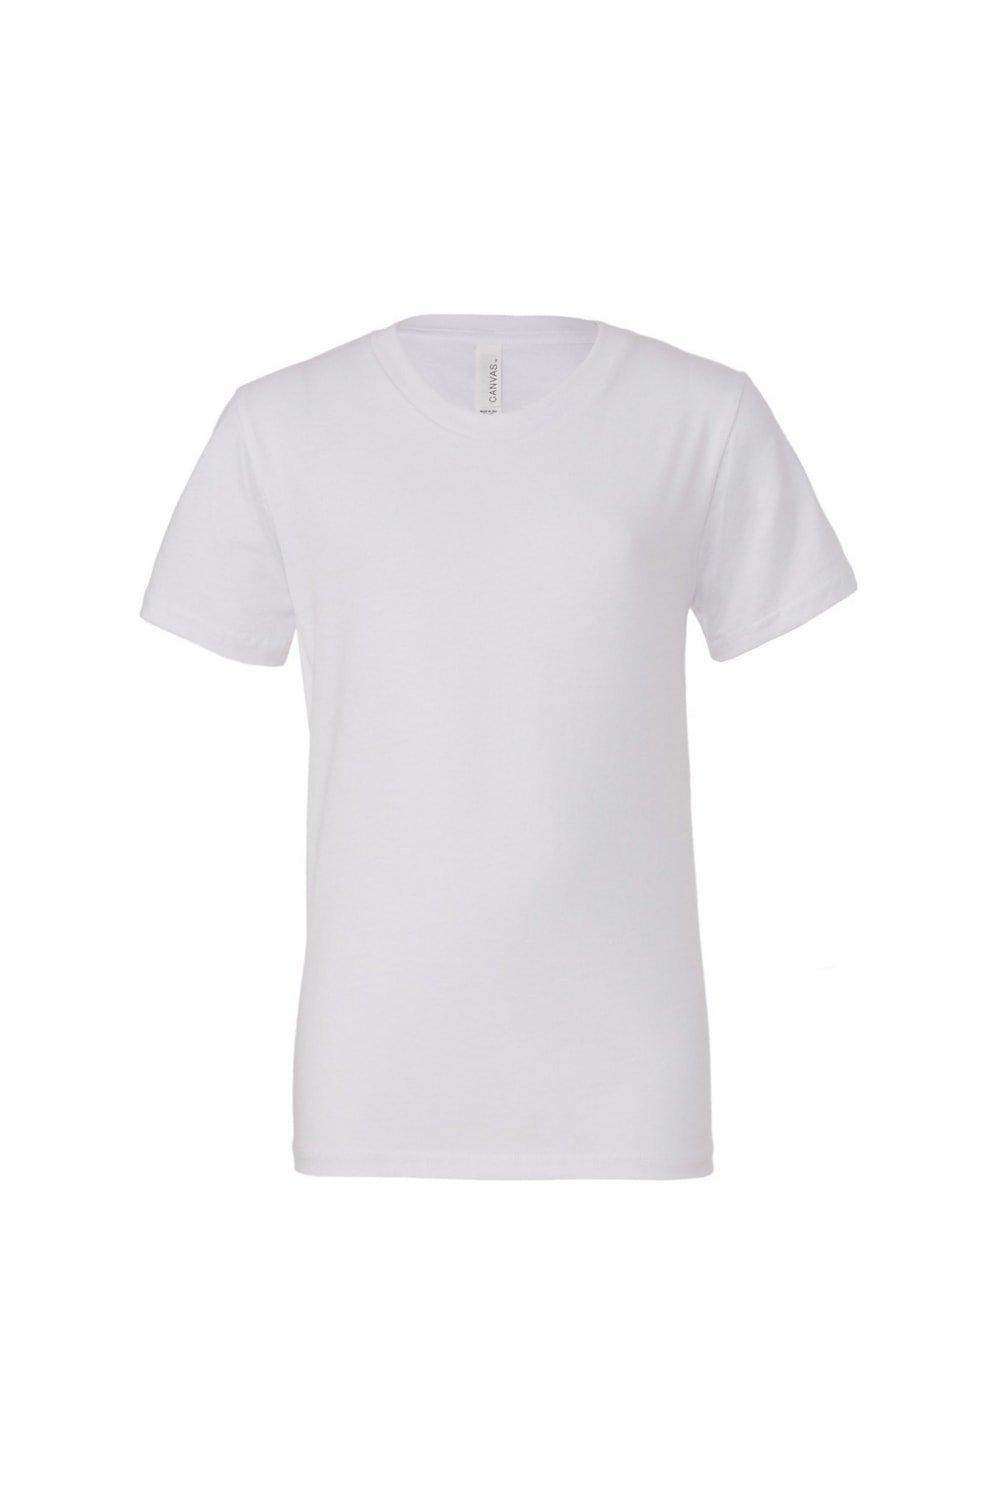 Молодежная футболка из джерси с короткими рукавами Bella + Canvas, белый розничная торговля бизнес процессы персонал ассортимент повышение квалификации